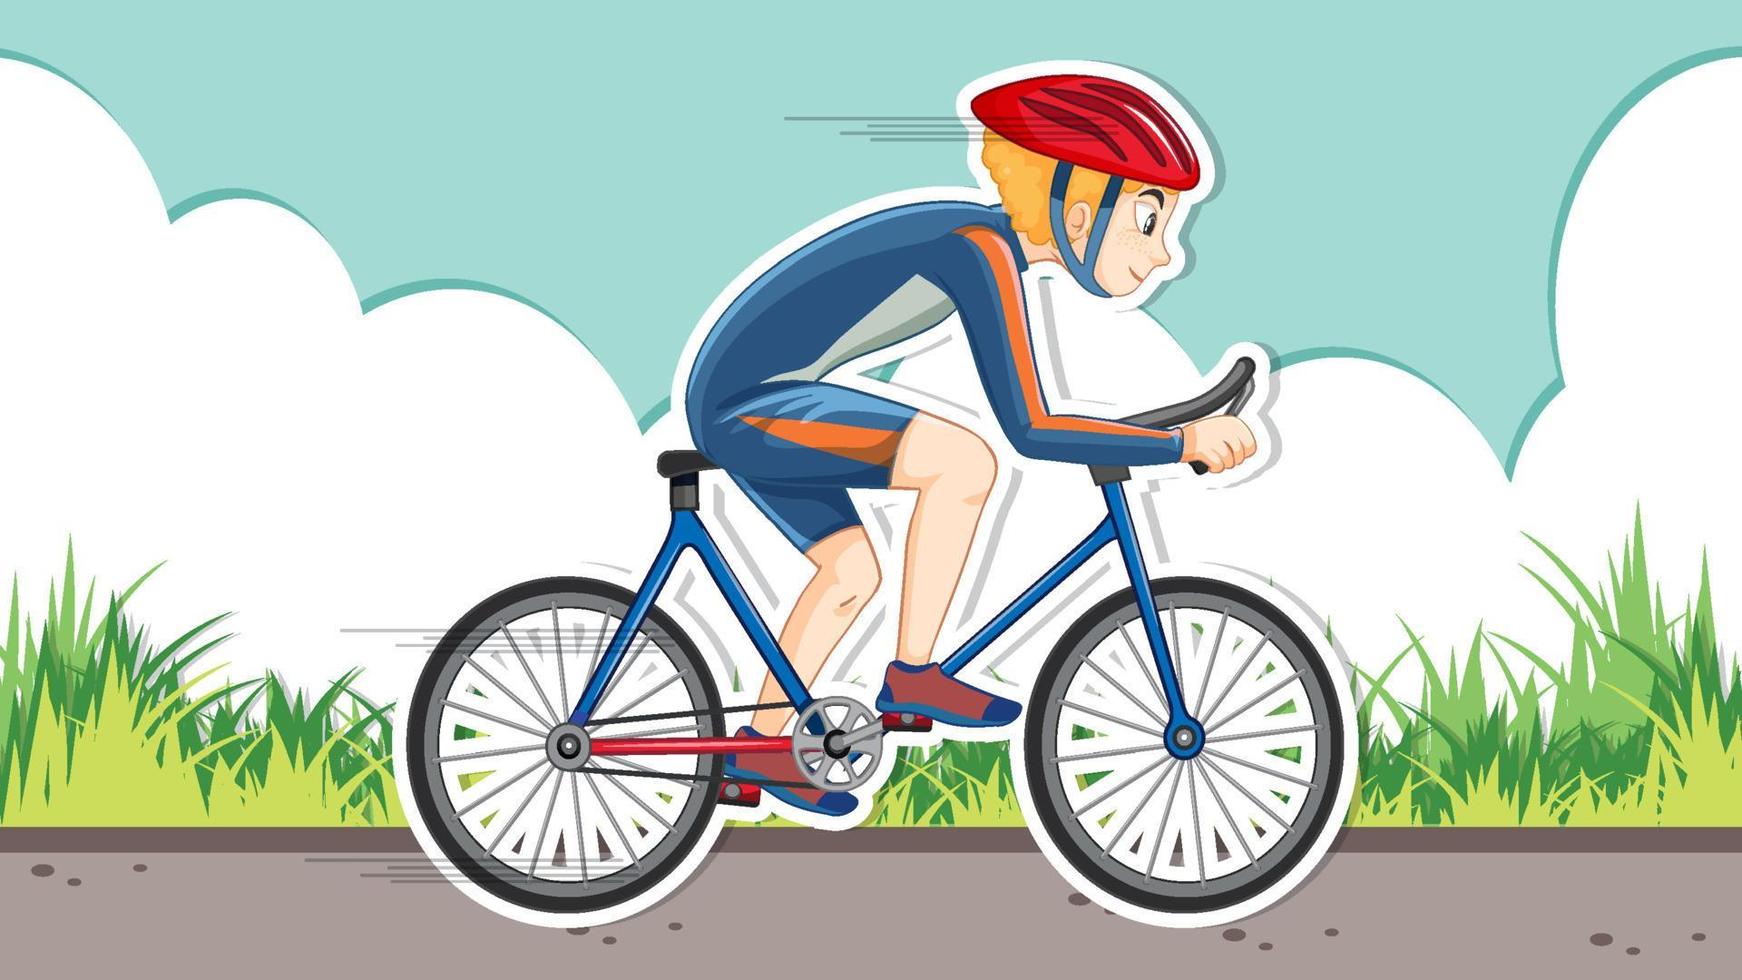 Thumbnail-Design mit Radfahrer, der Fahrrad fährt vektor